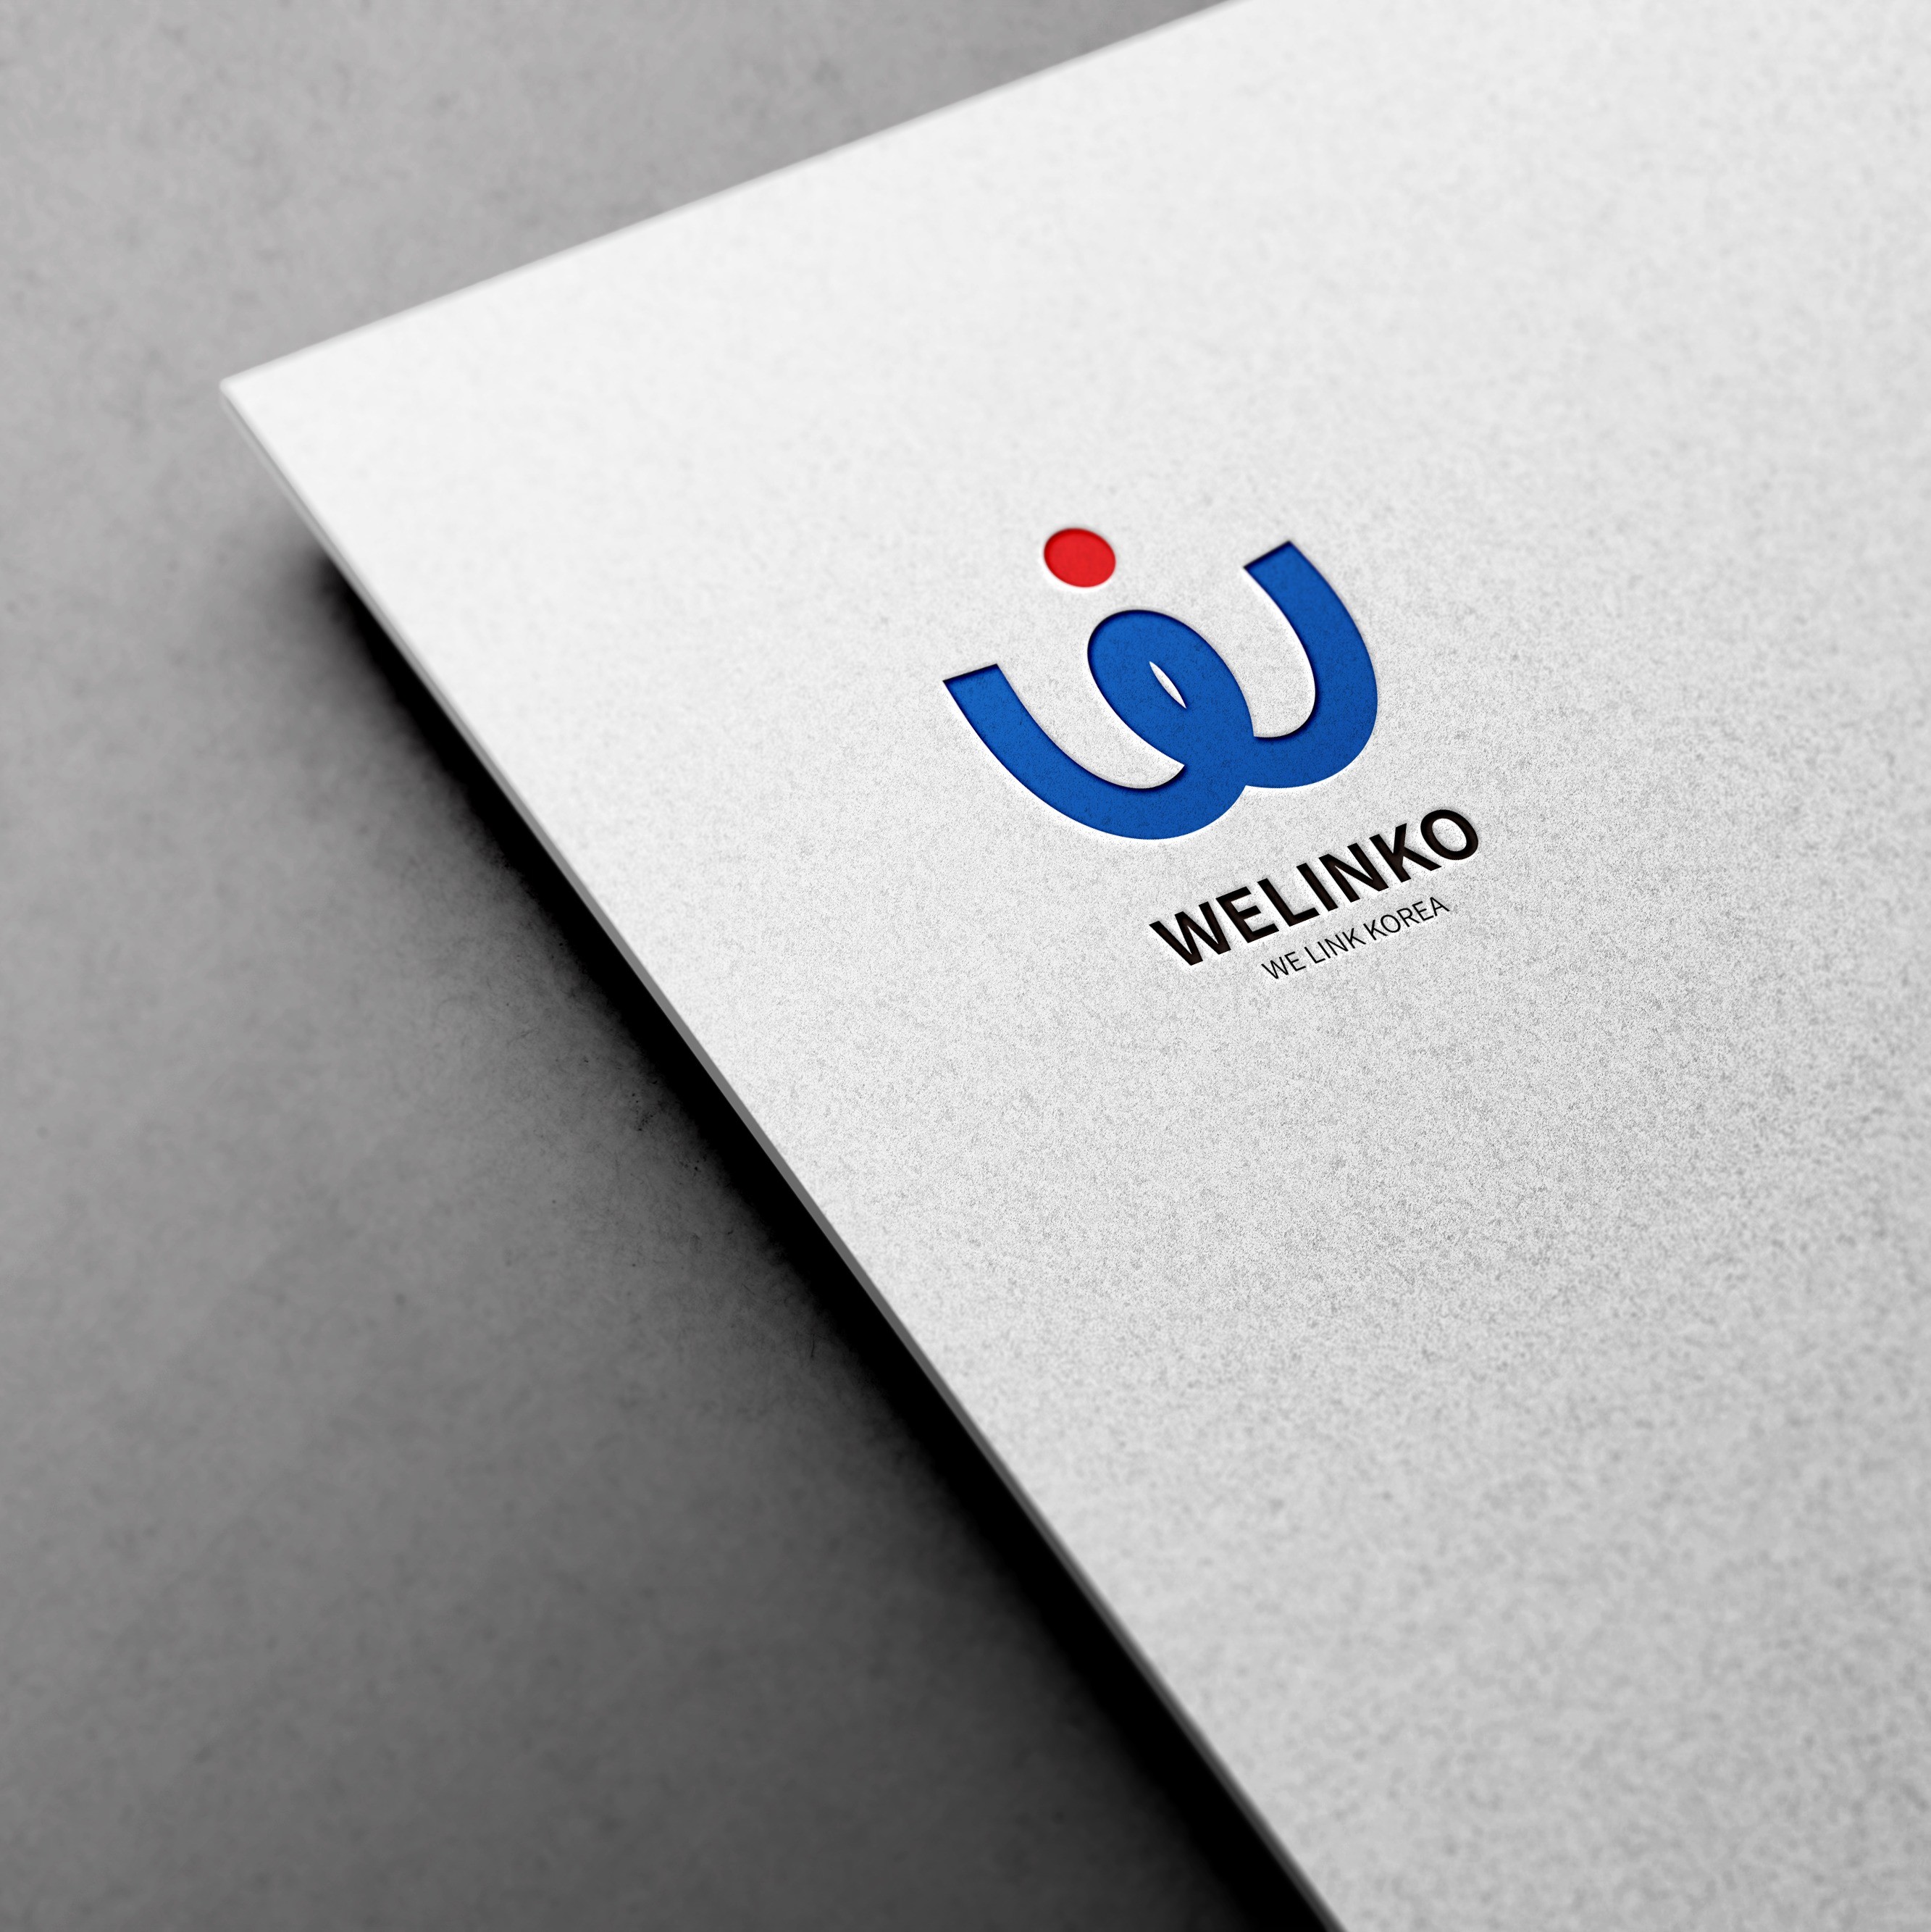 포트폴리오-네이밍부터 로고까지 브랜드에 맞춰 스토리를 제작해드린 '위링코' 브랜드 디자인